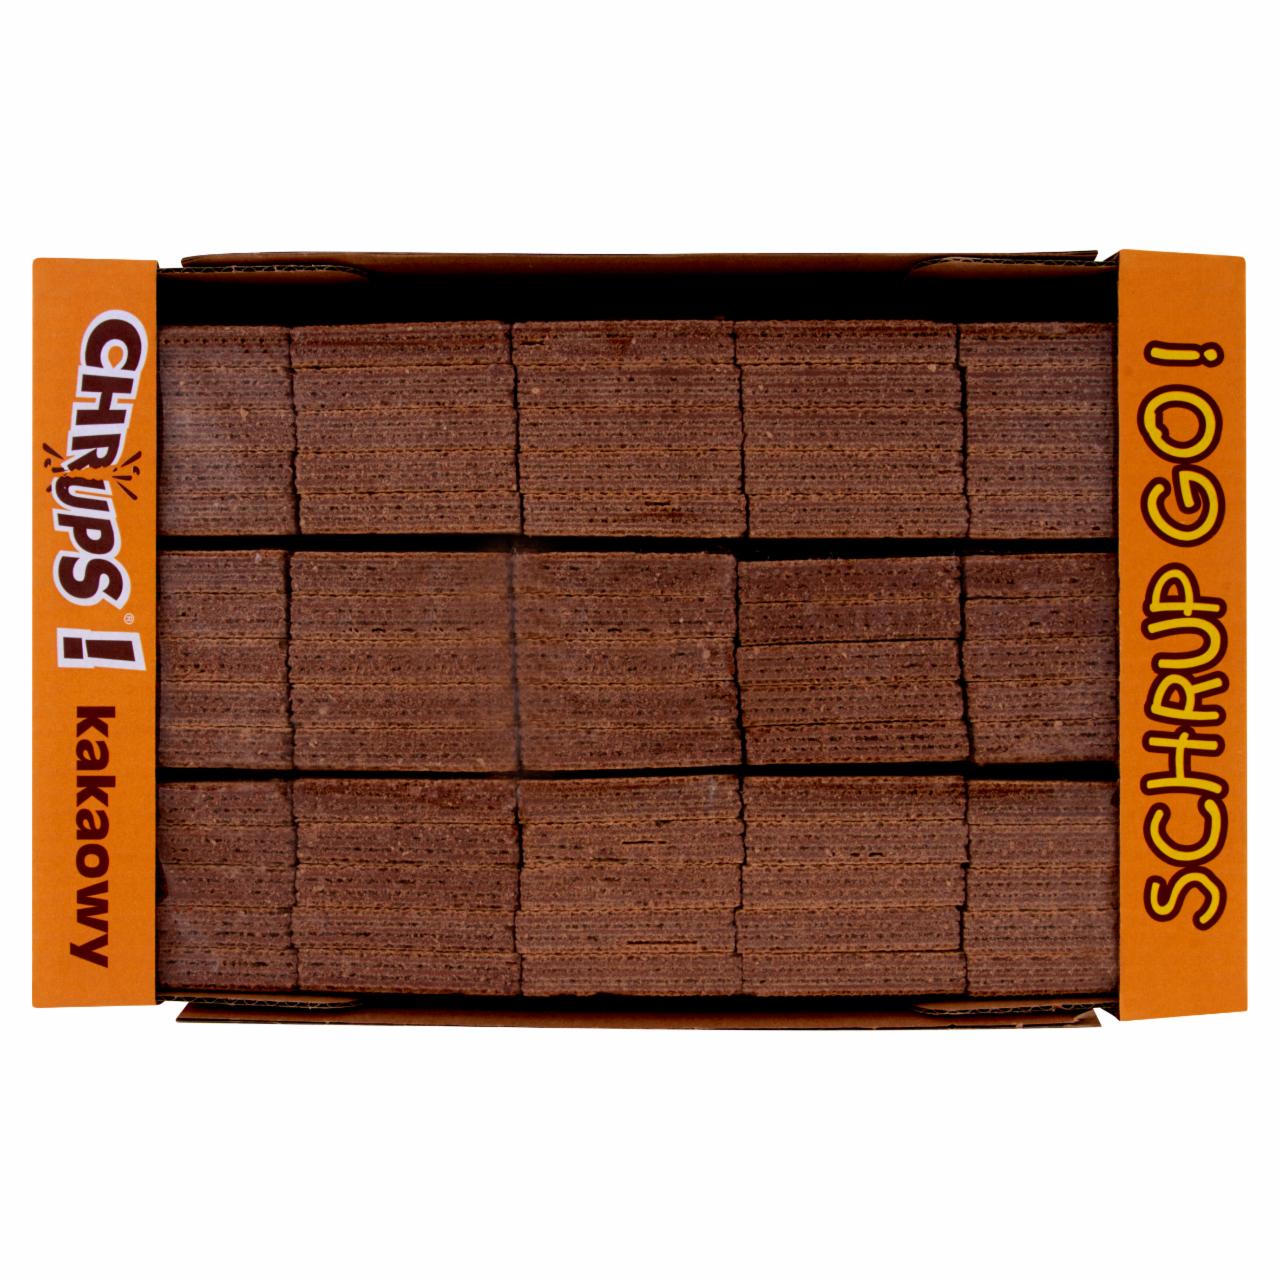 Zdjęcia - Cukry Nyskie Wafle Chrups kakaowe 2,50 kg